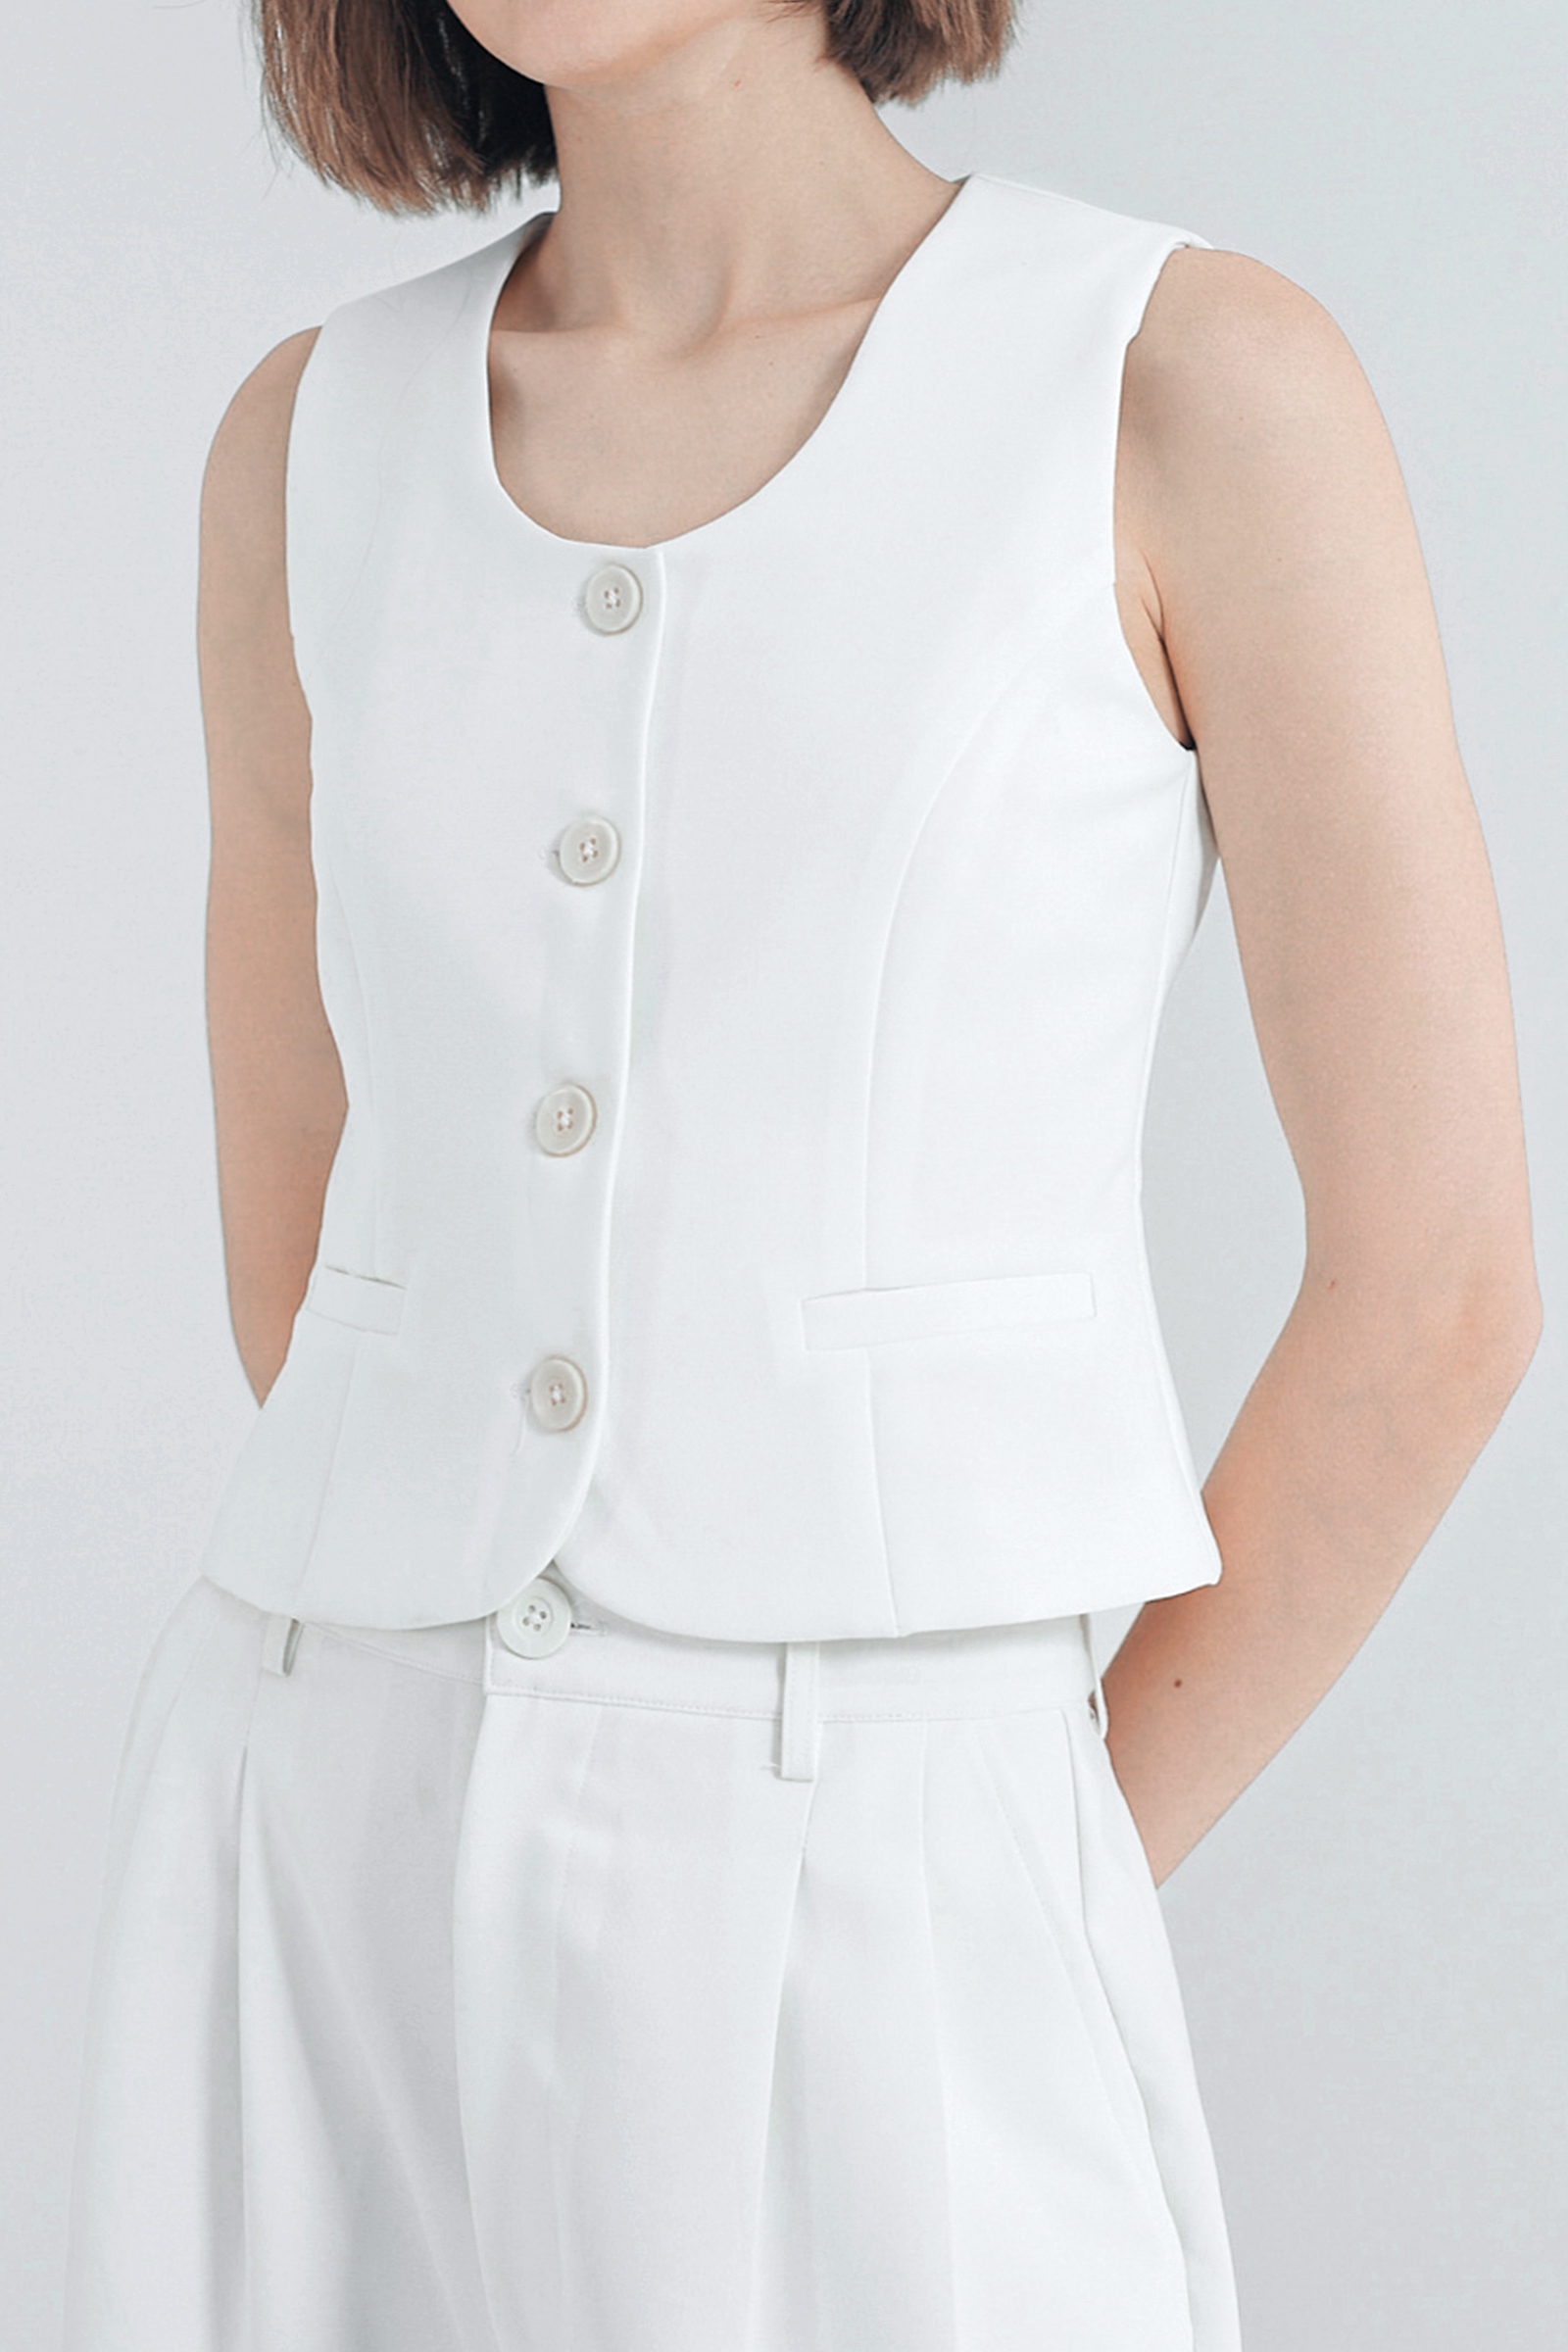 Picture of Kivee x Cath Halim - Casey Minimalist Vest Top Ivory